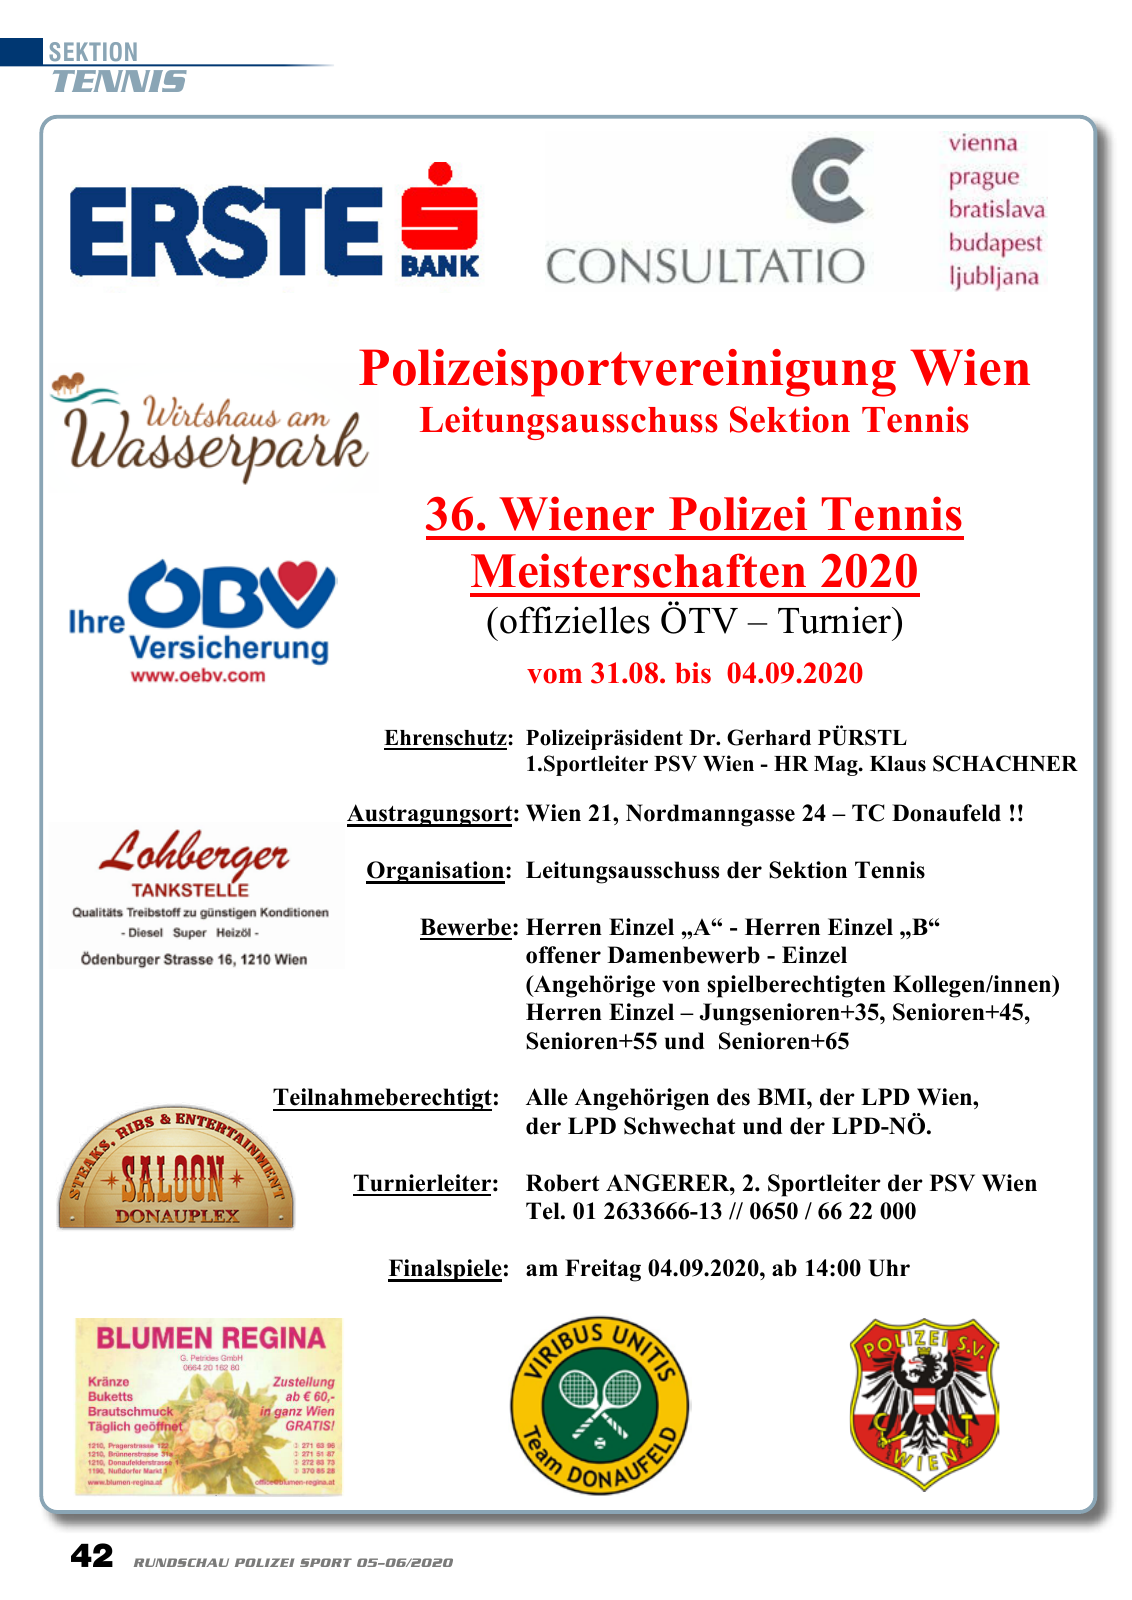 Vorschau Rundschau Polizei Sport 05-06/2020 Seite 42